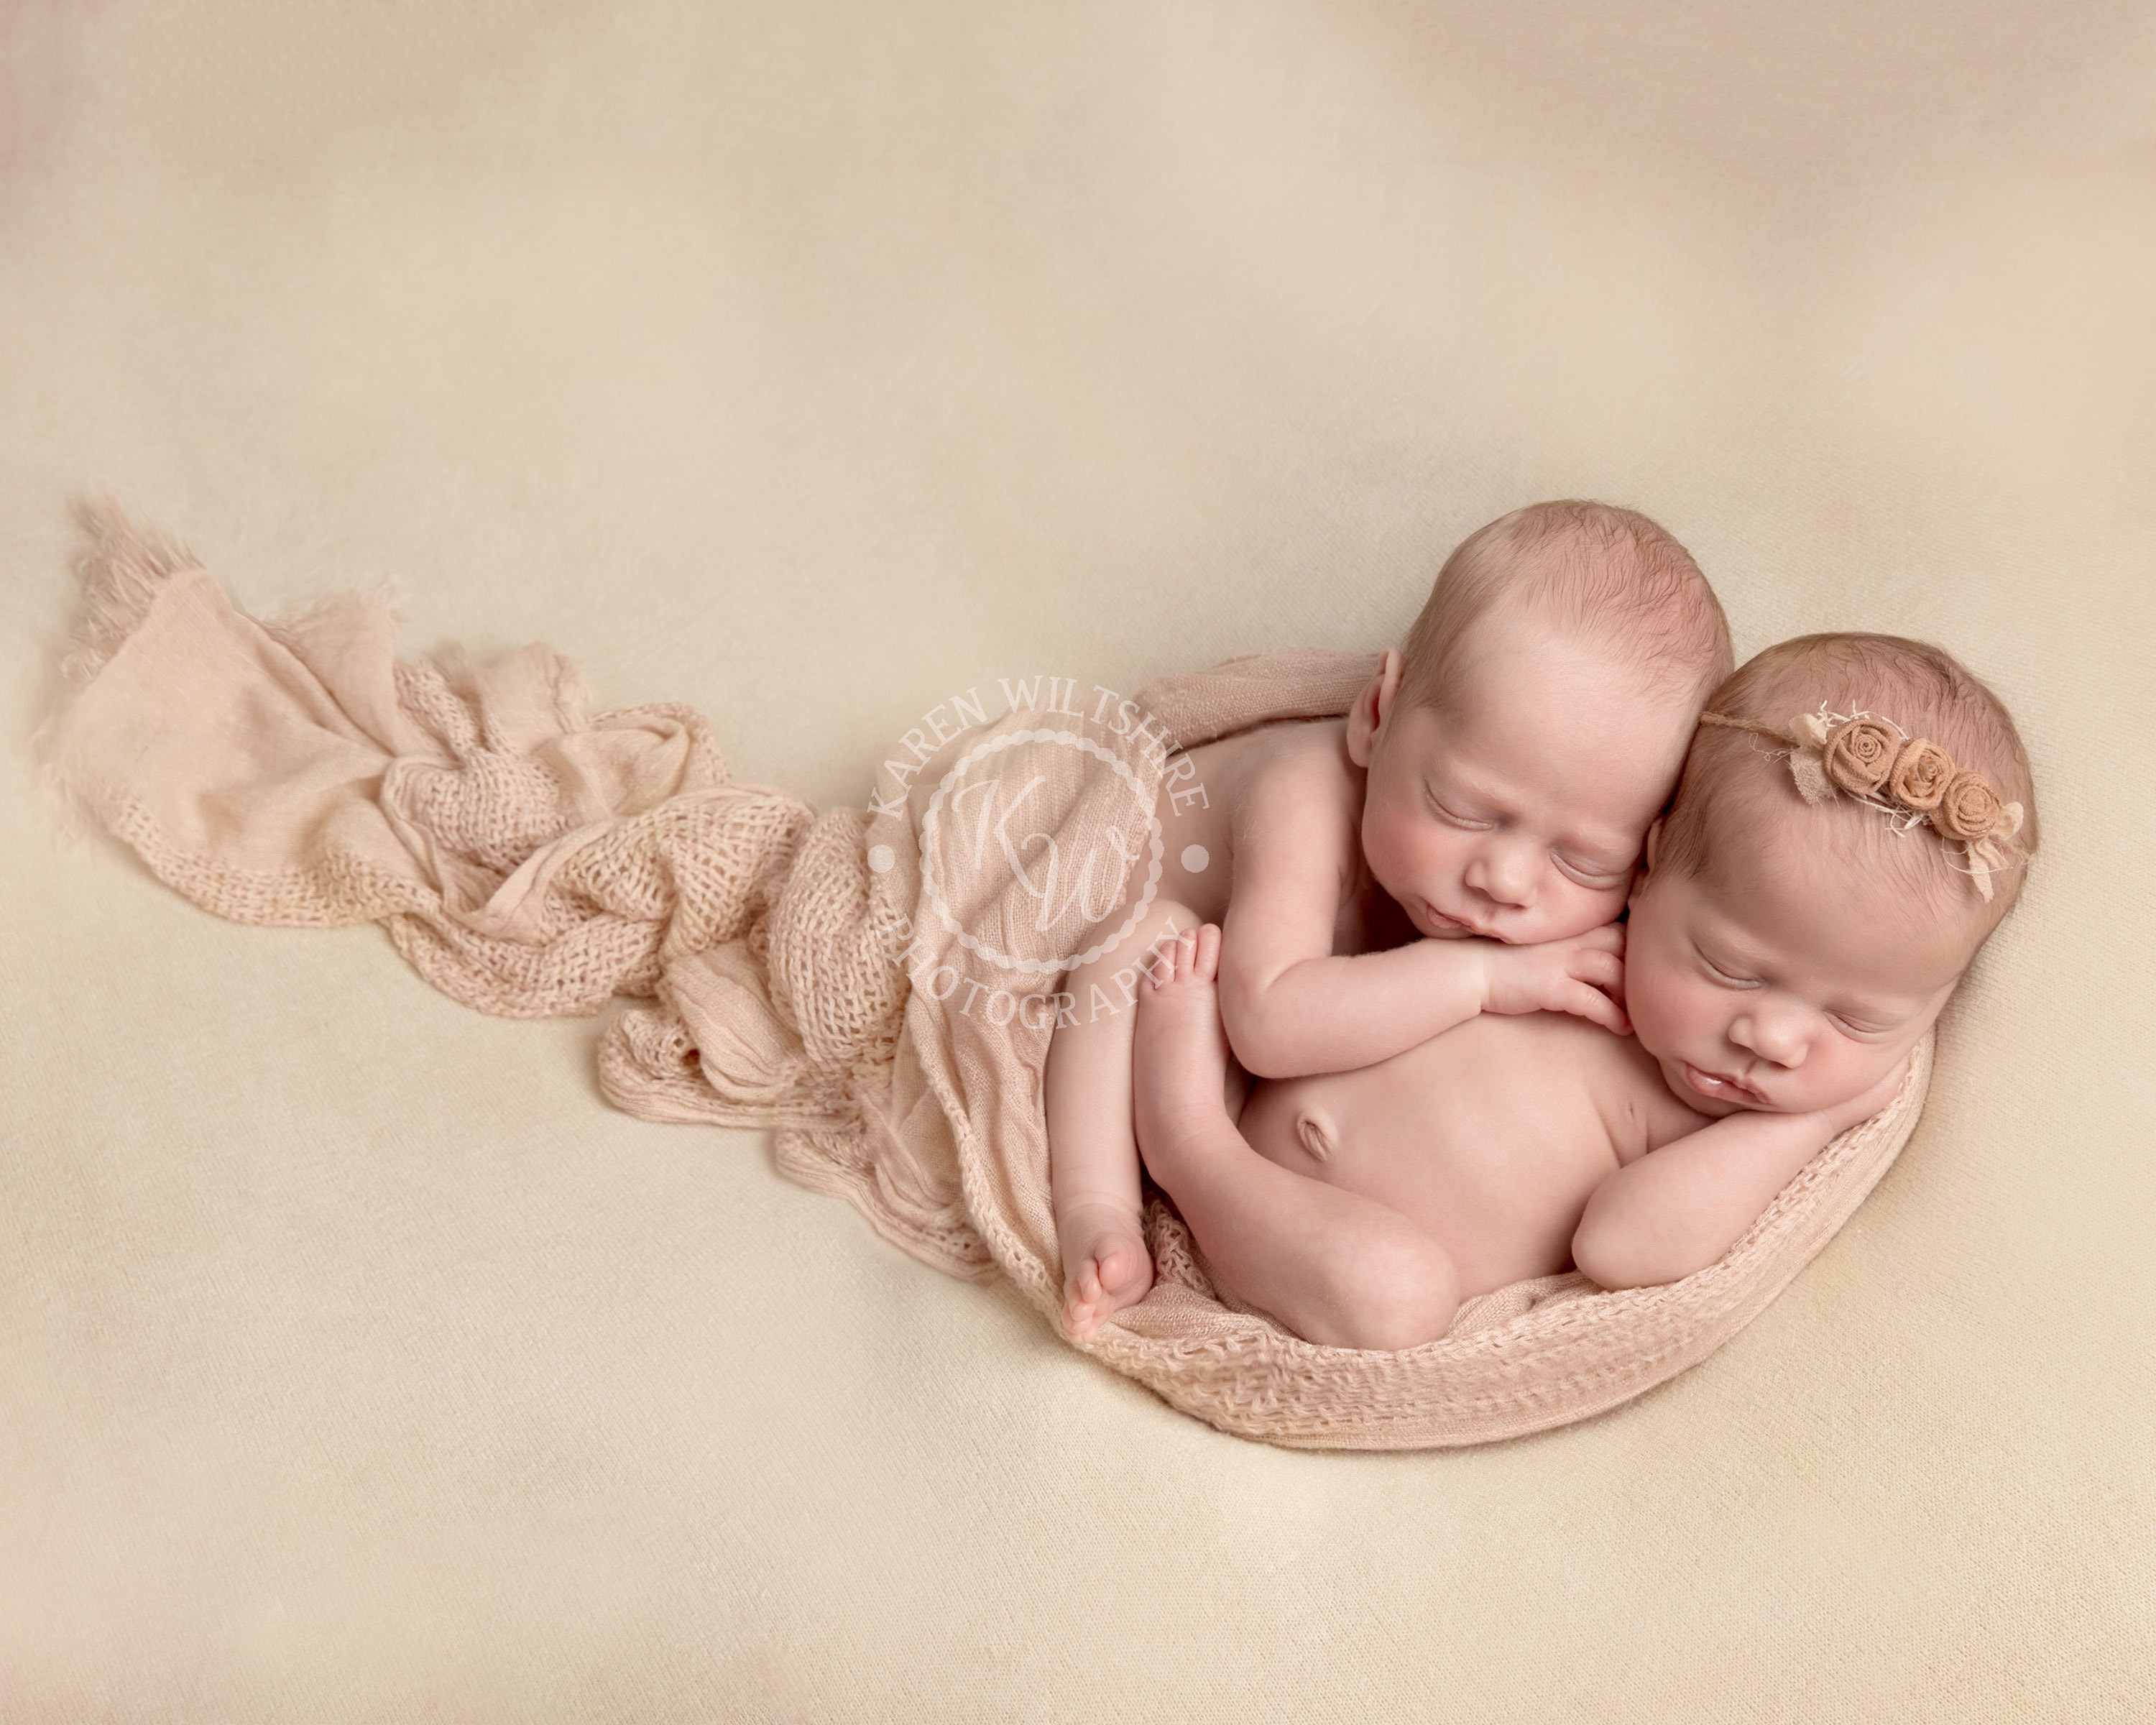 baby boy and girl twins on cream blanket